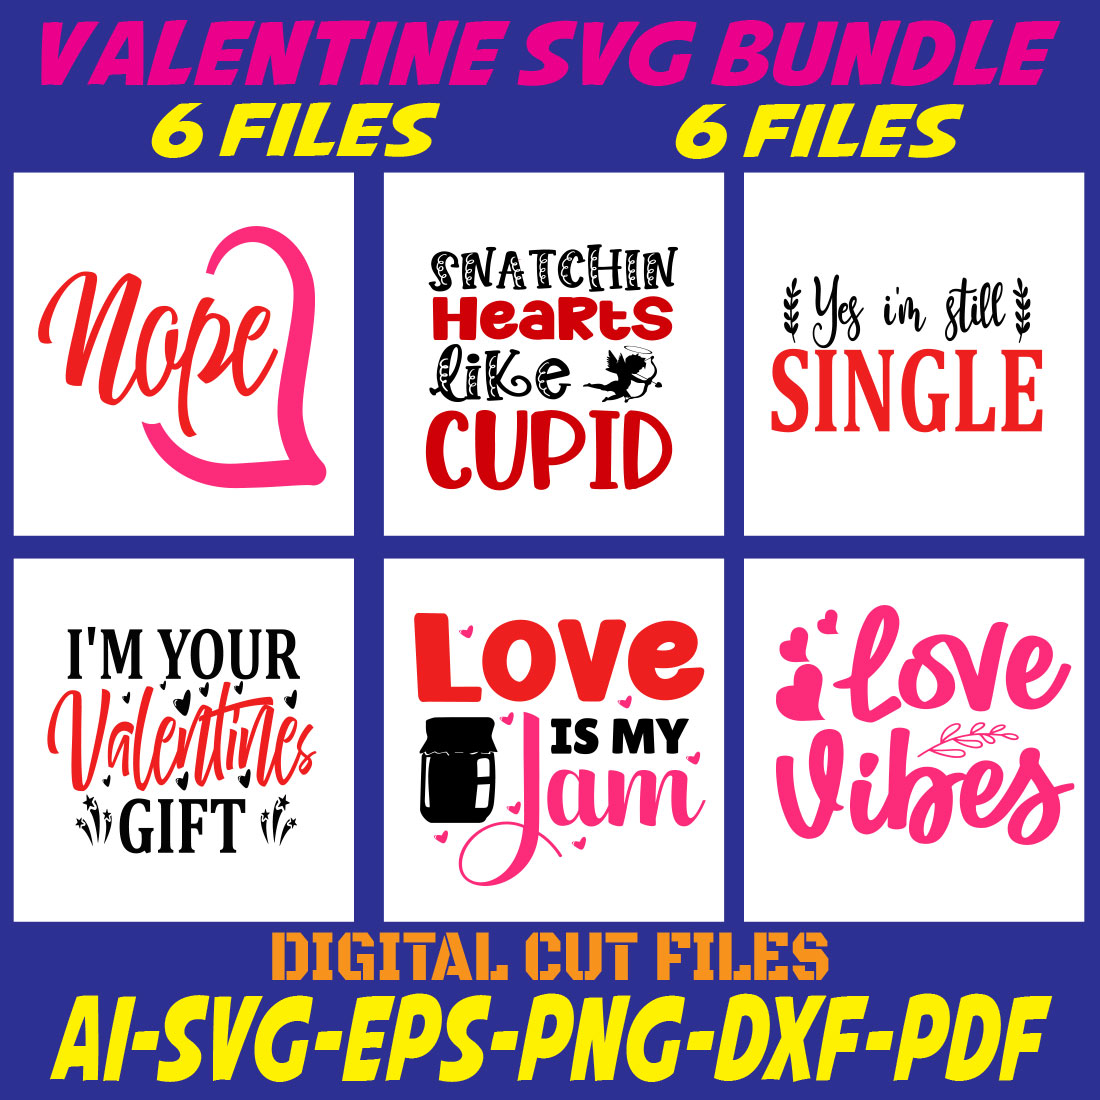 Valentine SVG Bundle cover image.